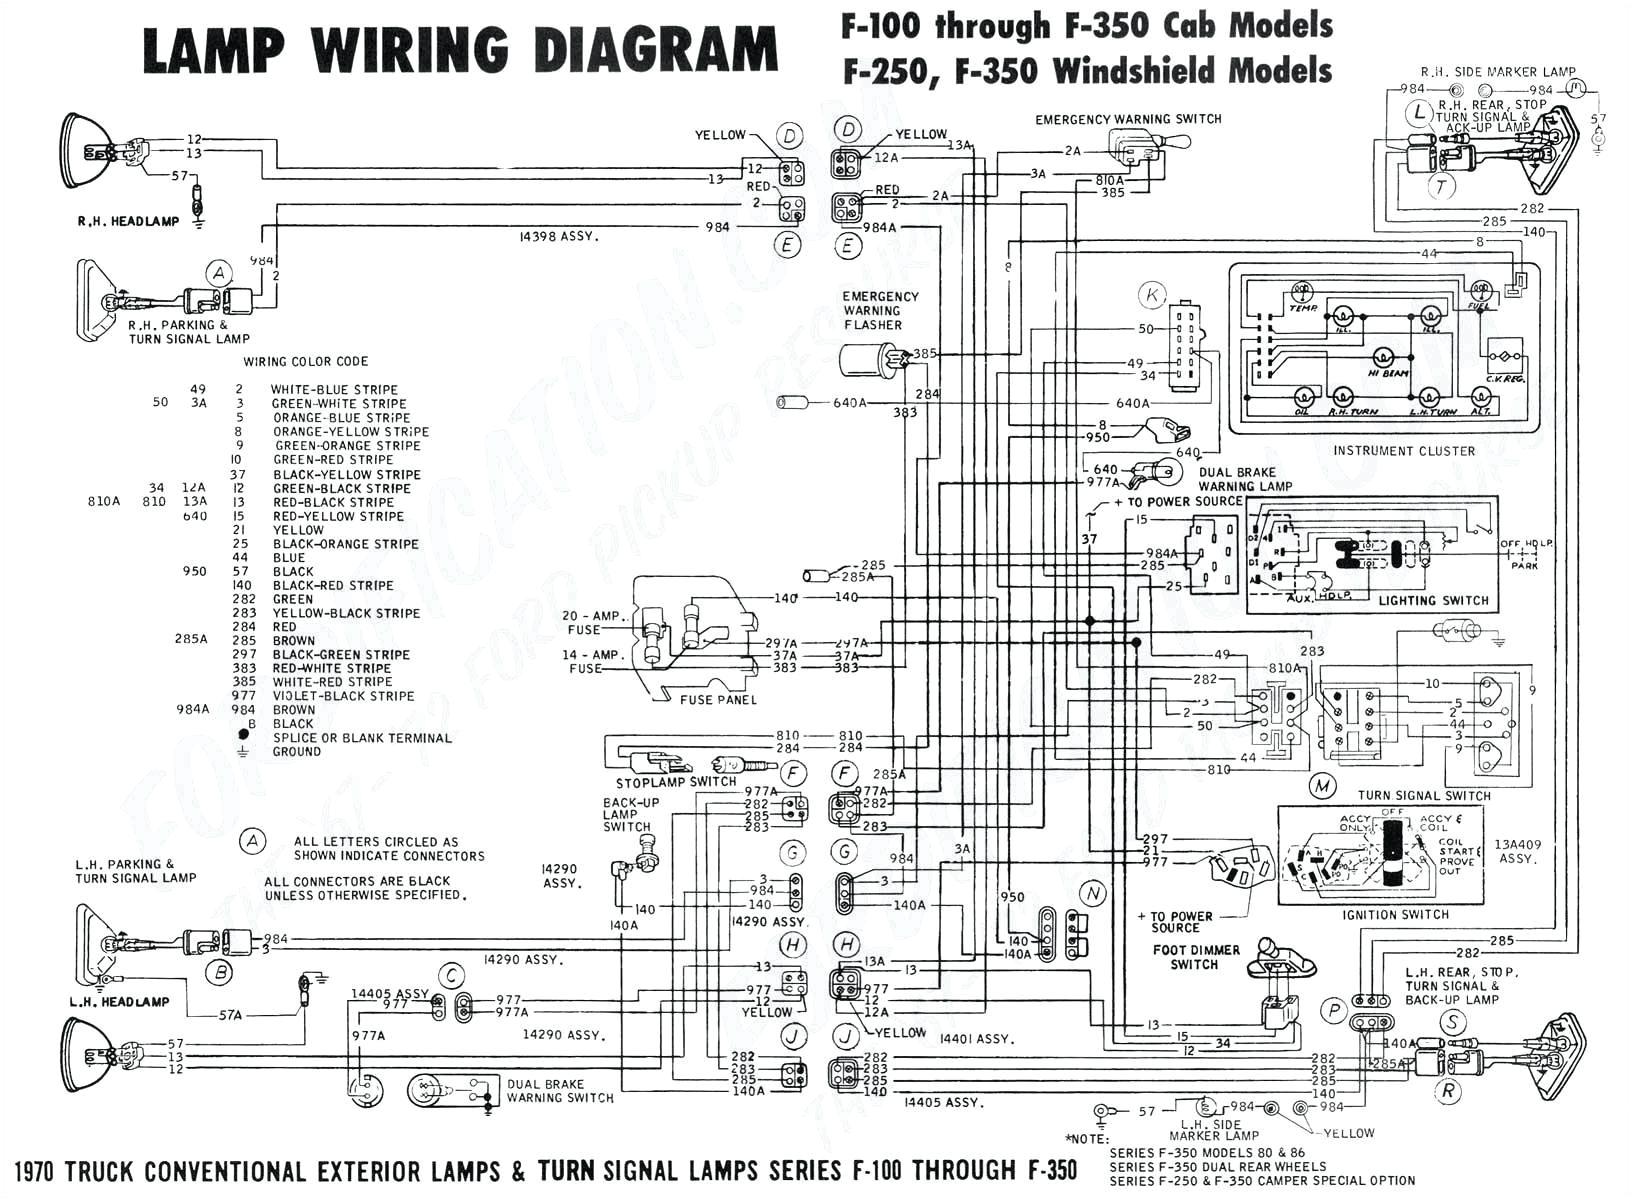 wiring beacon diagram dp340240 wiring diagram mega wiring beacon diagram dp340240